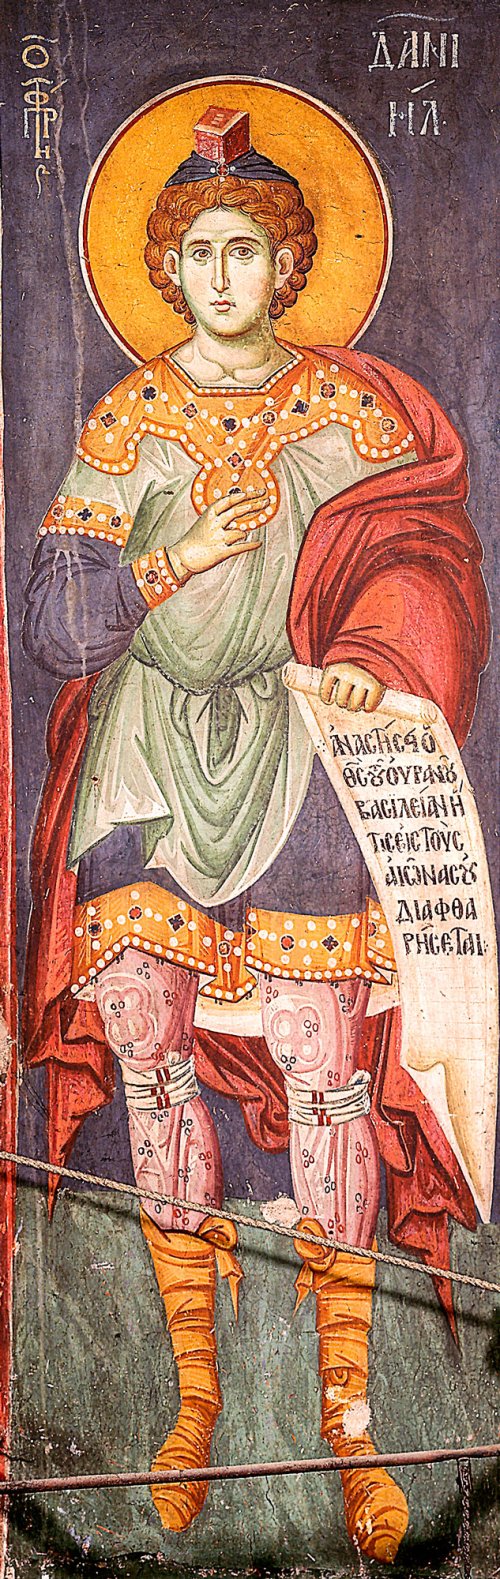 Sfântul Proroc Daniel şi Sfinţii trei tineri: Anania, Azaria şi Misail (Dezlegare la peşte)